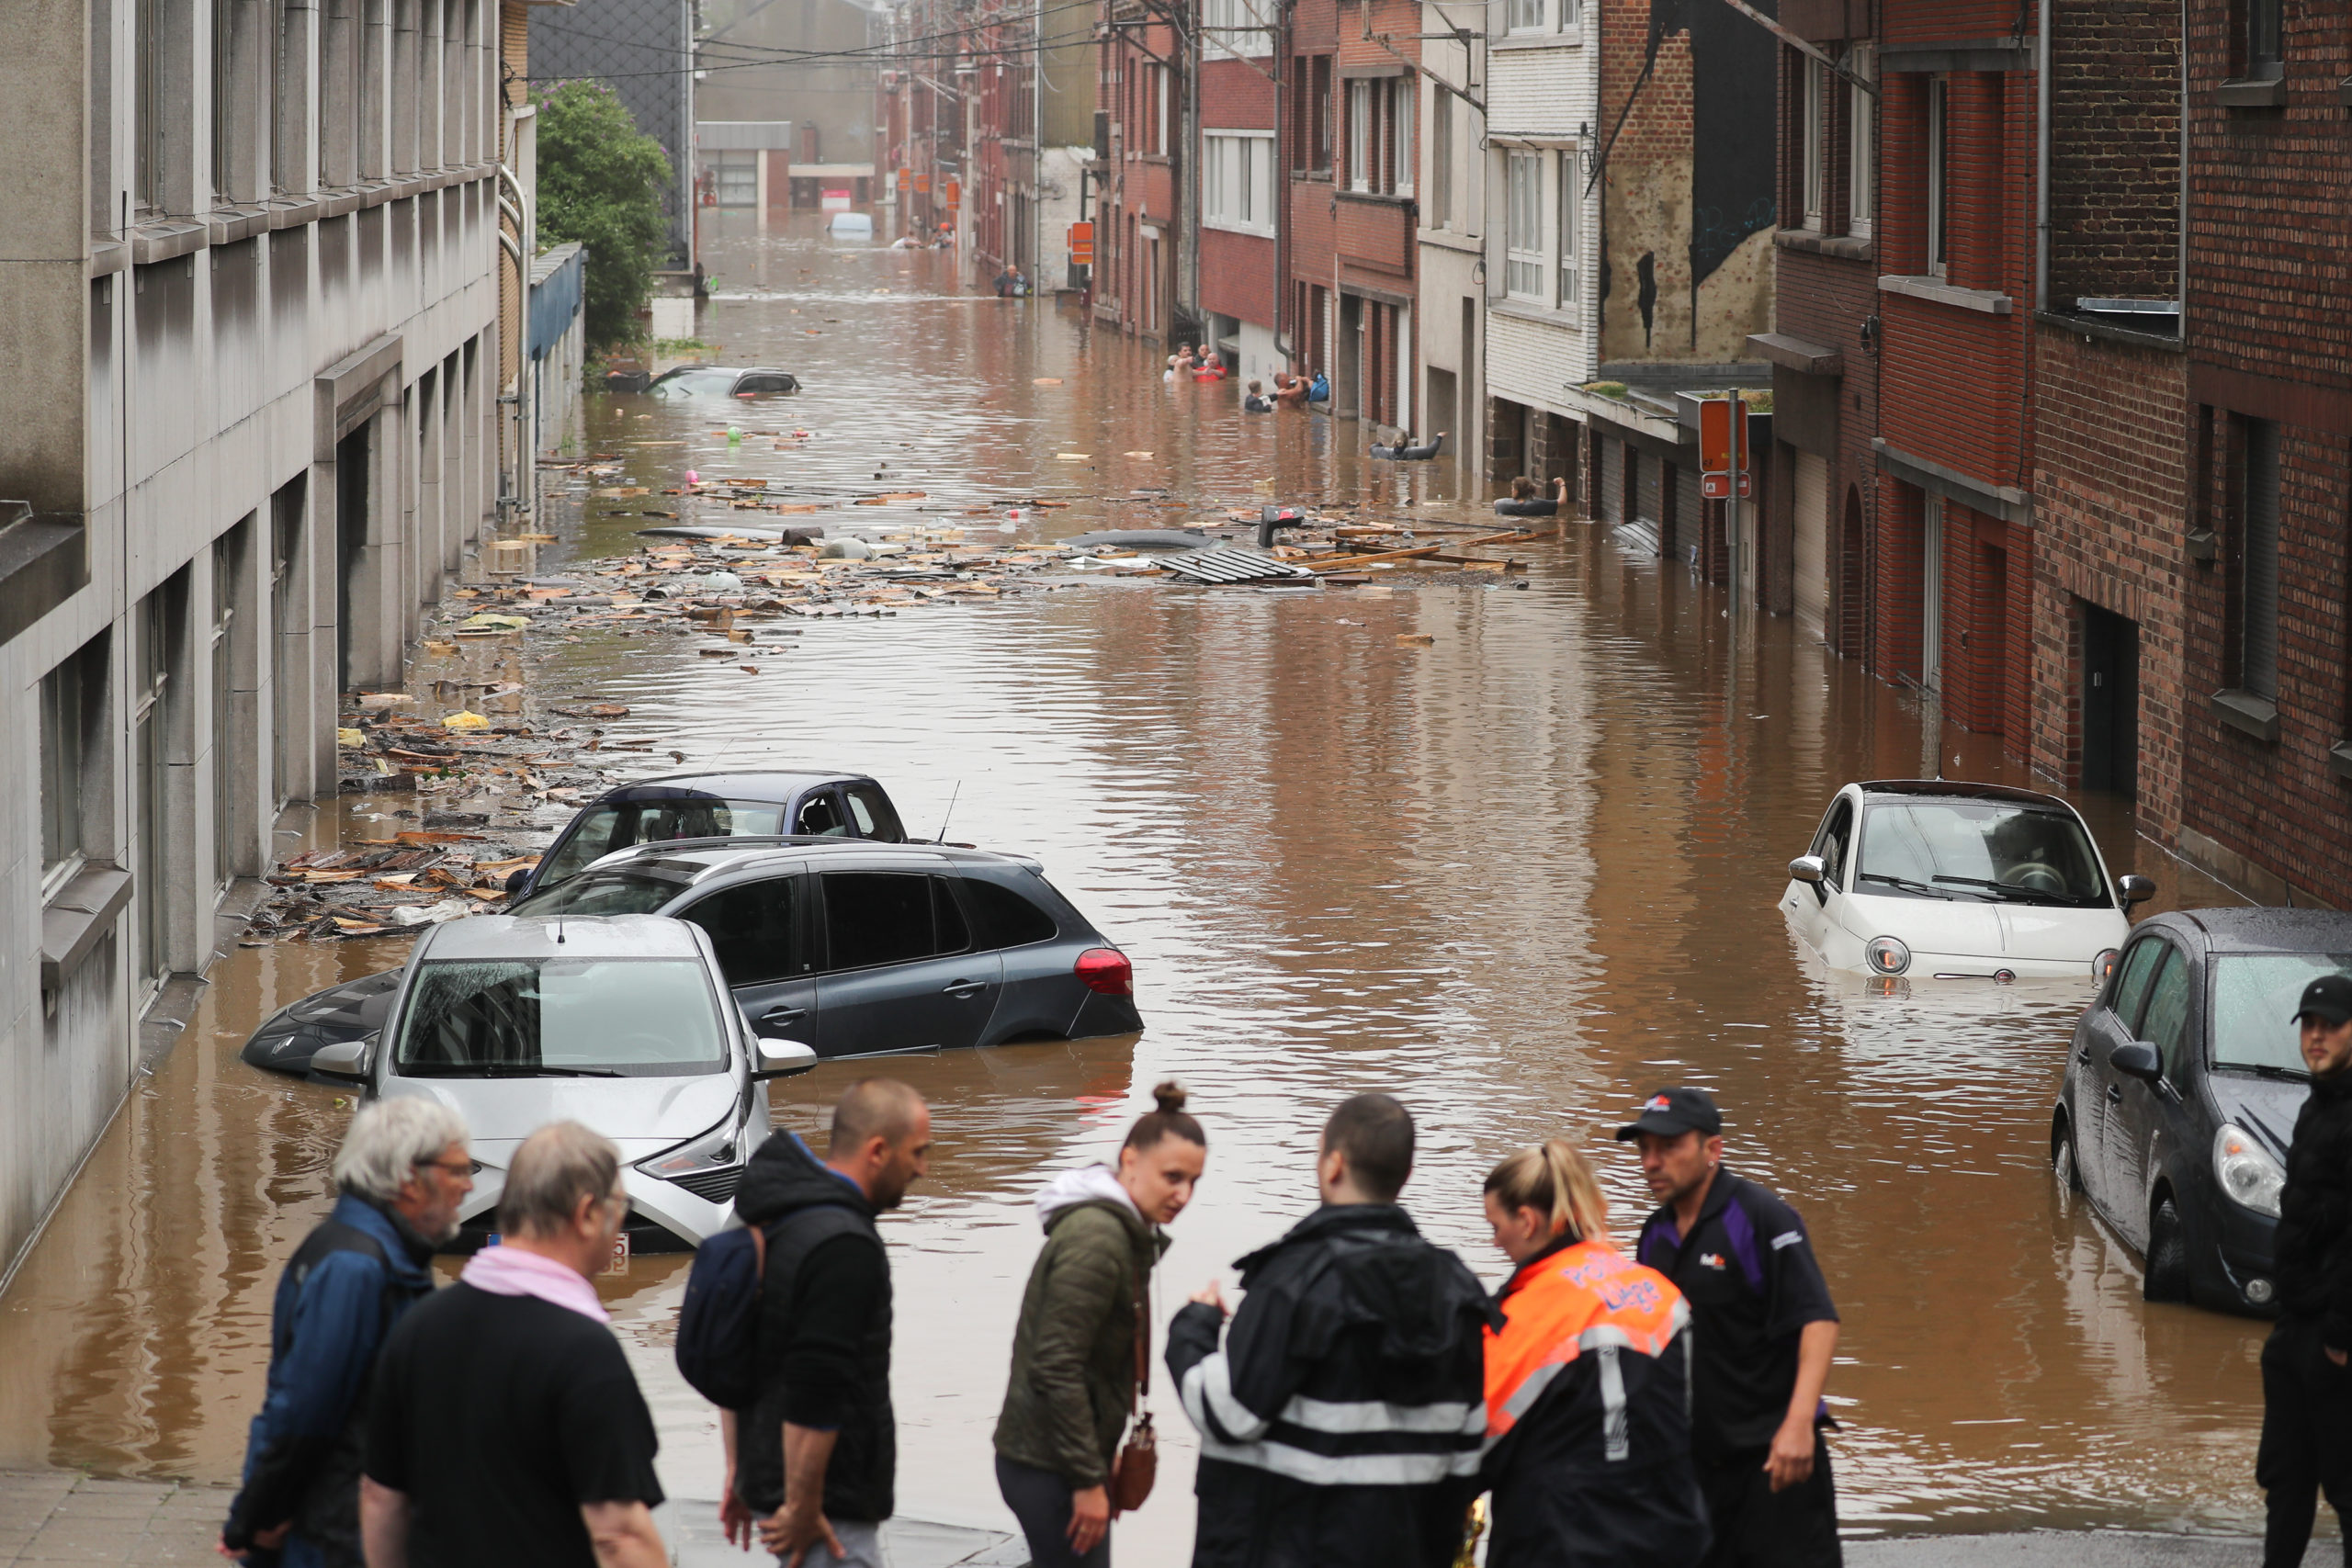 België: hausse op de markt voor tweedehands auto's verwacht als gevolg van de overstromingen in juli